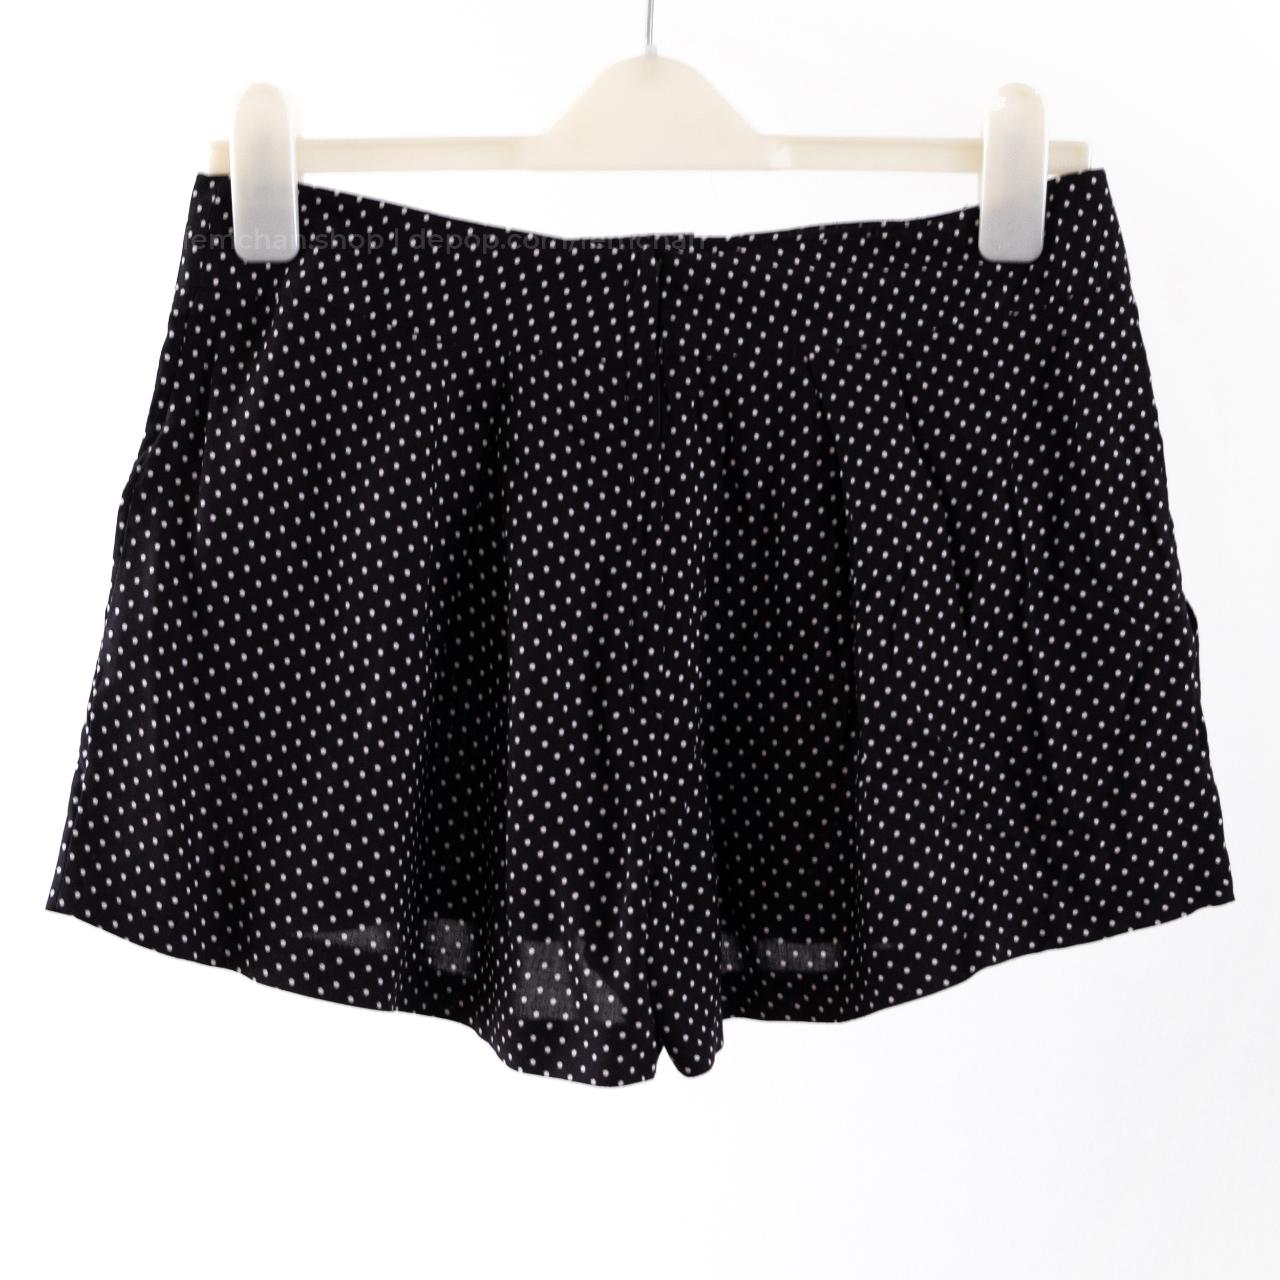 Ditsy polka dot bow shorts/culottes. These shorts... - Depop